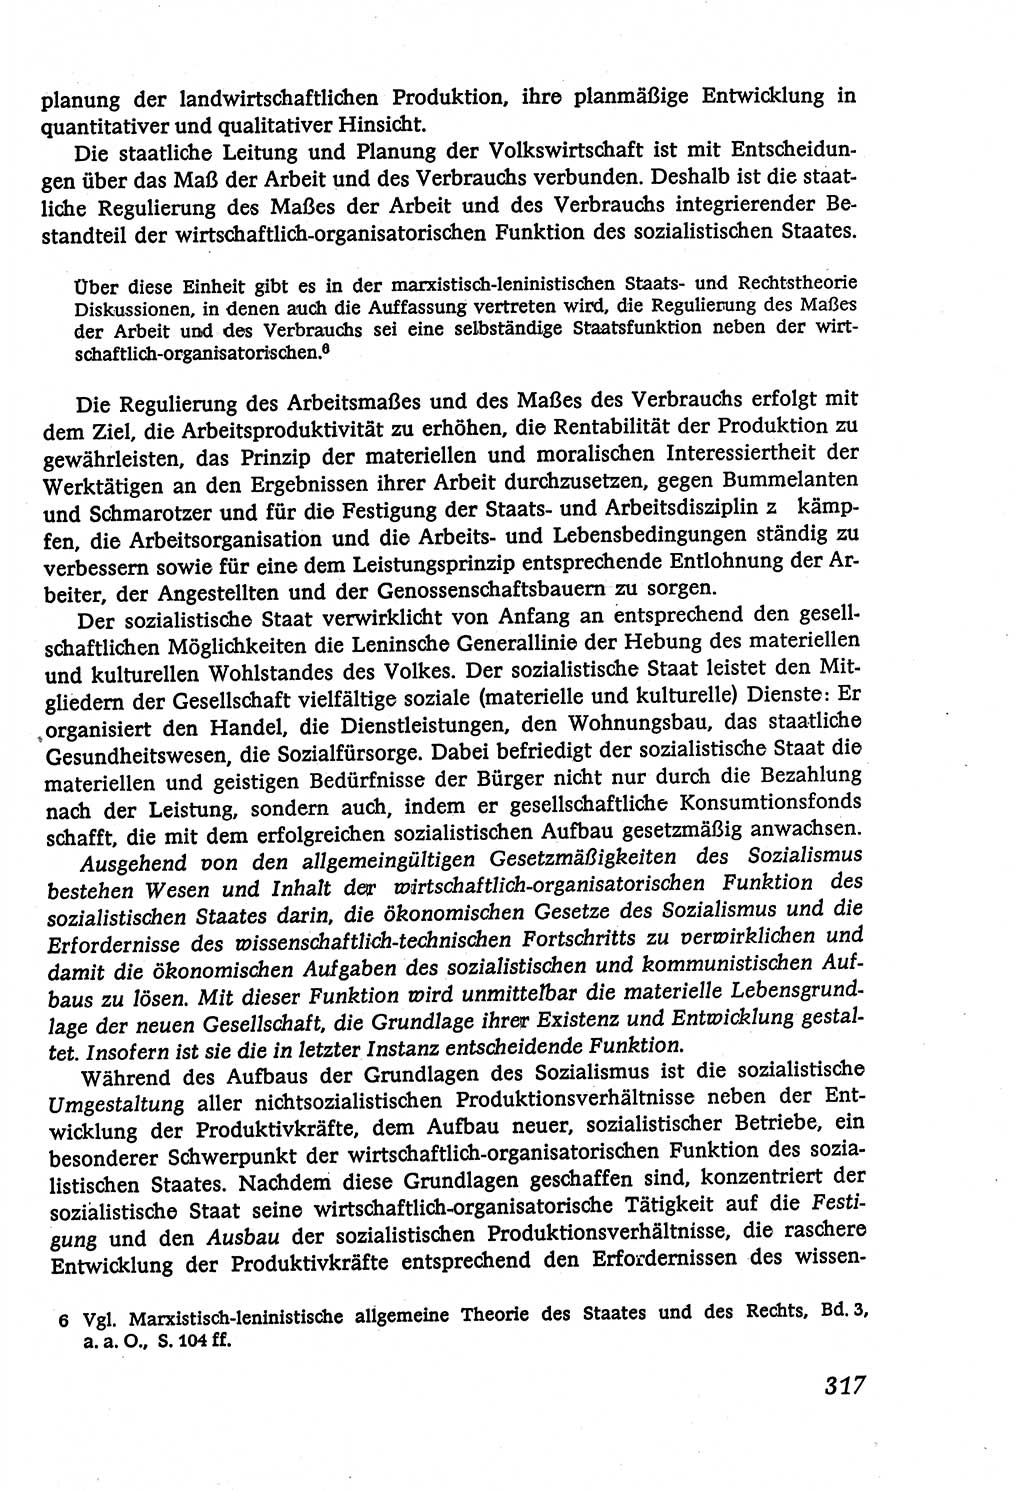 Marxistisch-leninistische (ML) Staats- und Rechtstheorie [Deutsche Demokratische Republik (DDR)], Lehrbuch 1980, Seite 317 (ML St.-R.-Th. DDR Lb. 1980, S. 317)